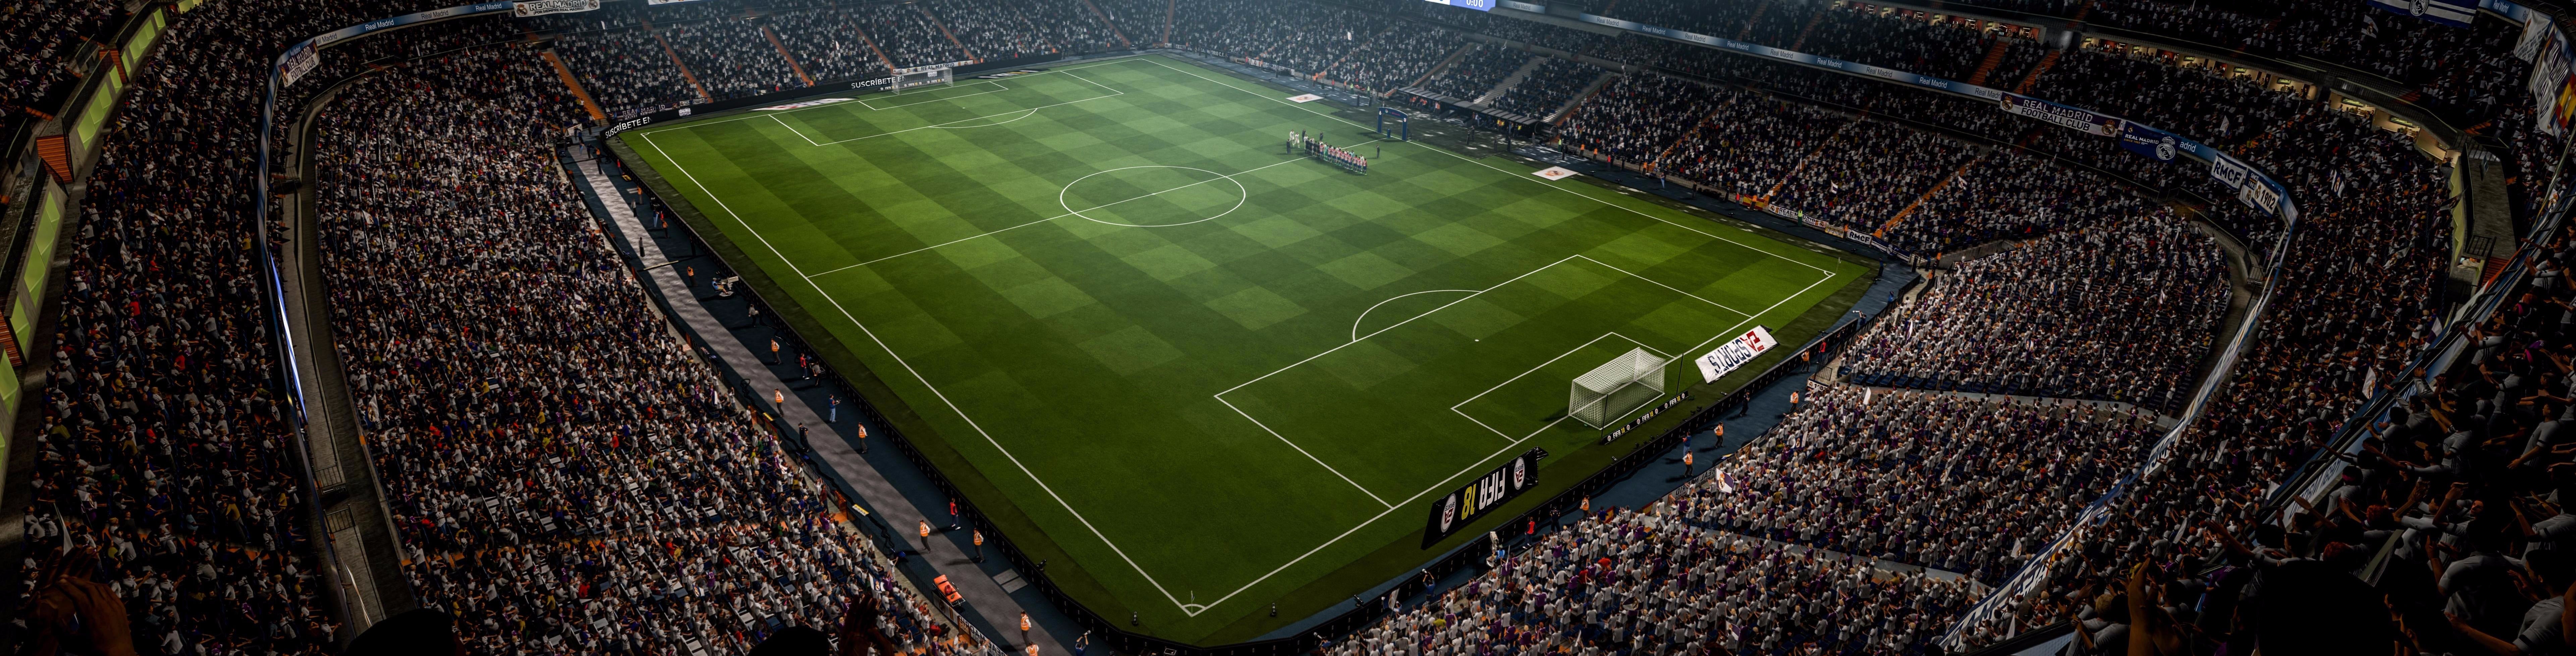 Image for E3 DOJMY z FIFA 18